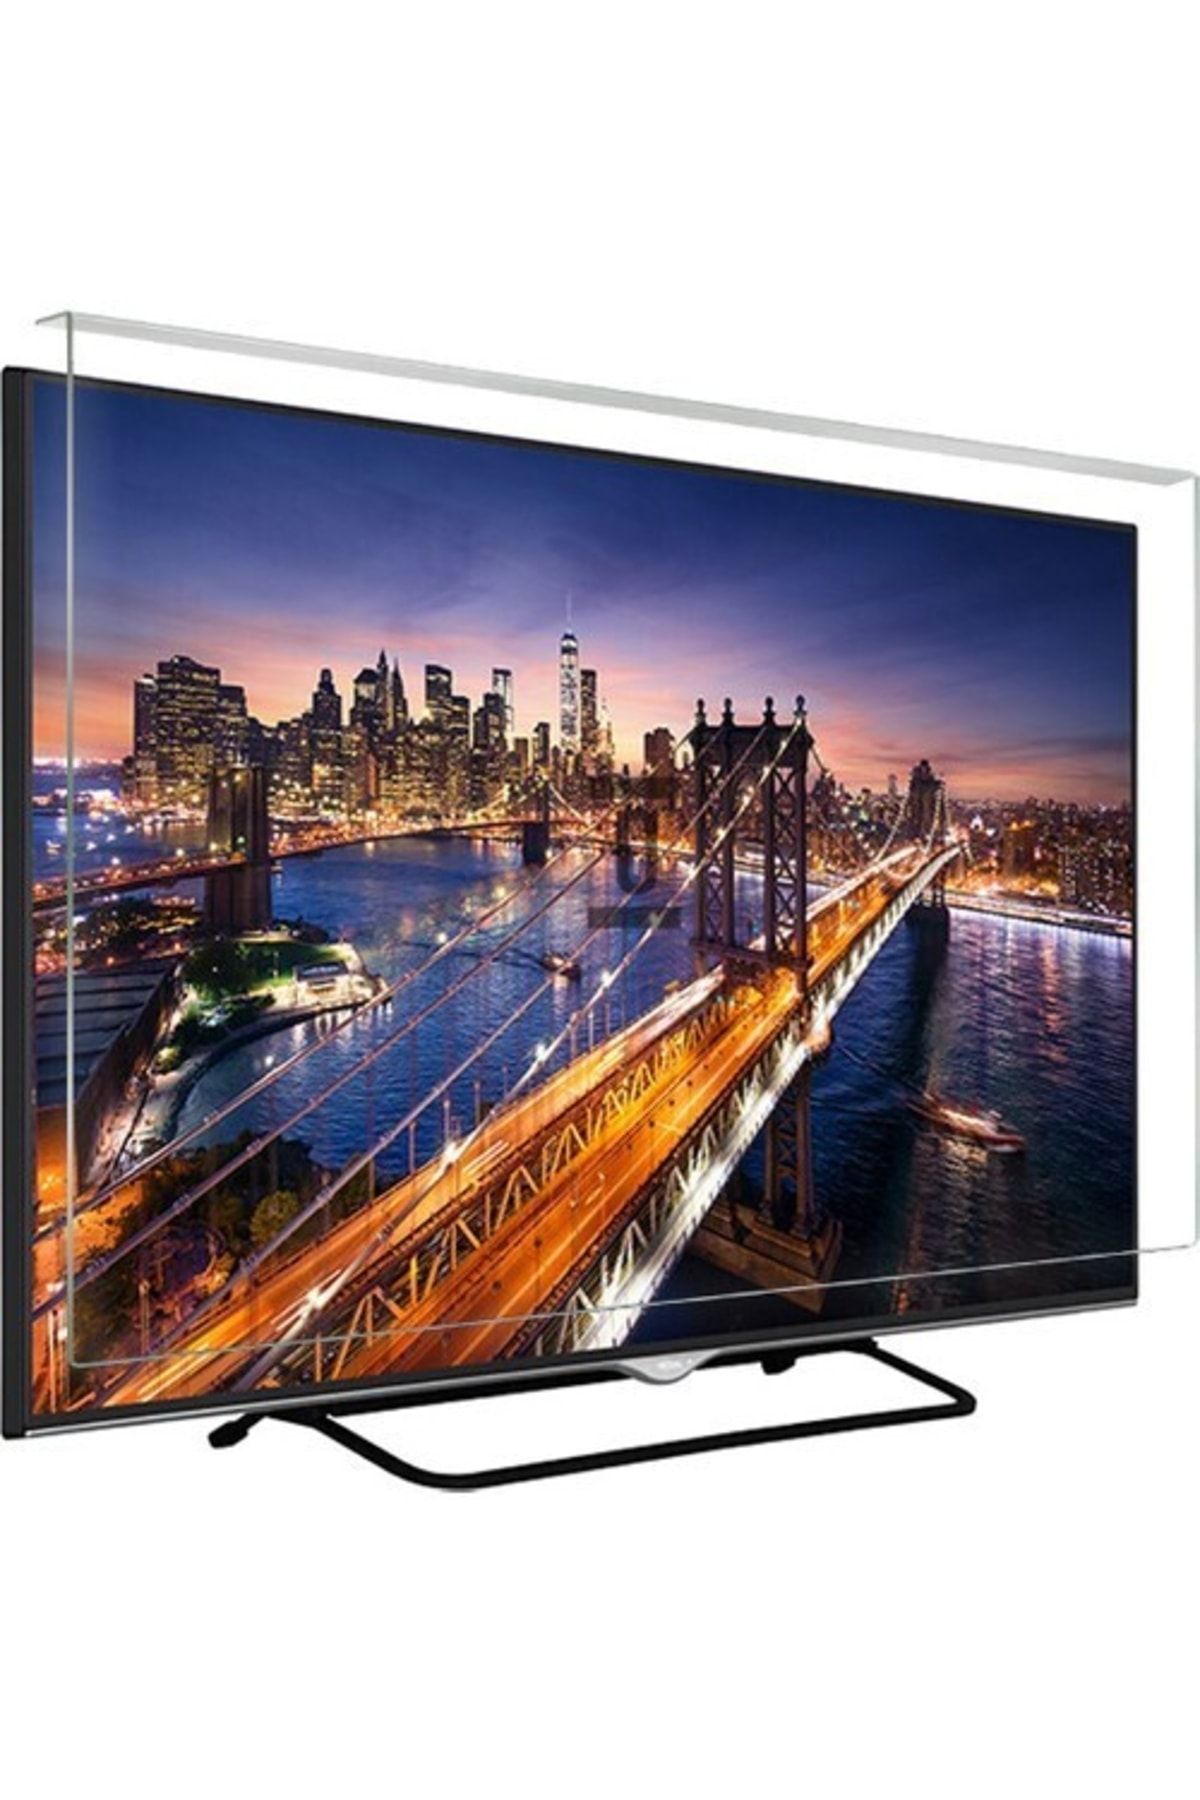 Finlux Asaf Online-evçelik 50fx7445f Tv Ekran Koruyucu Düz (flat) Ekran